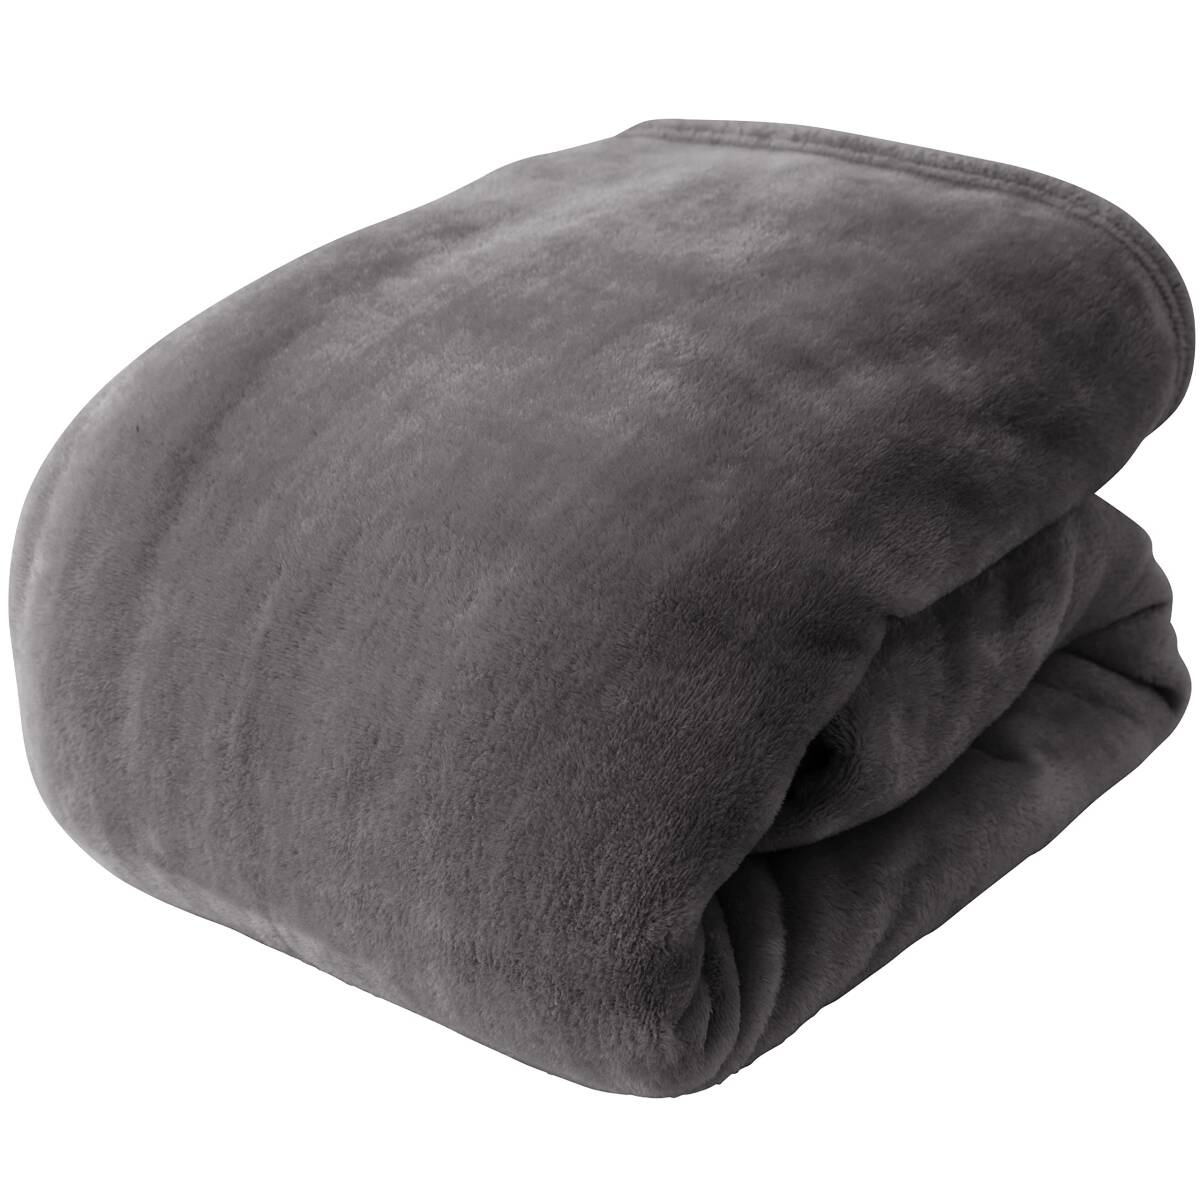 mofua одеяло двойной зимний покрывало mofa микроволокно угольно-серый теплый ............5000036